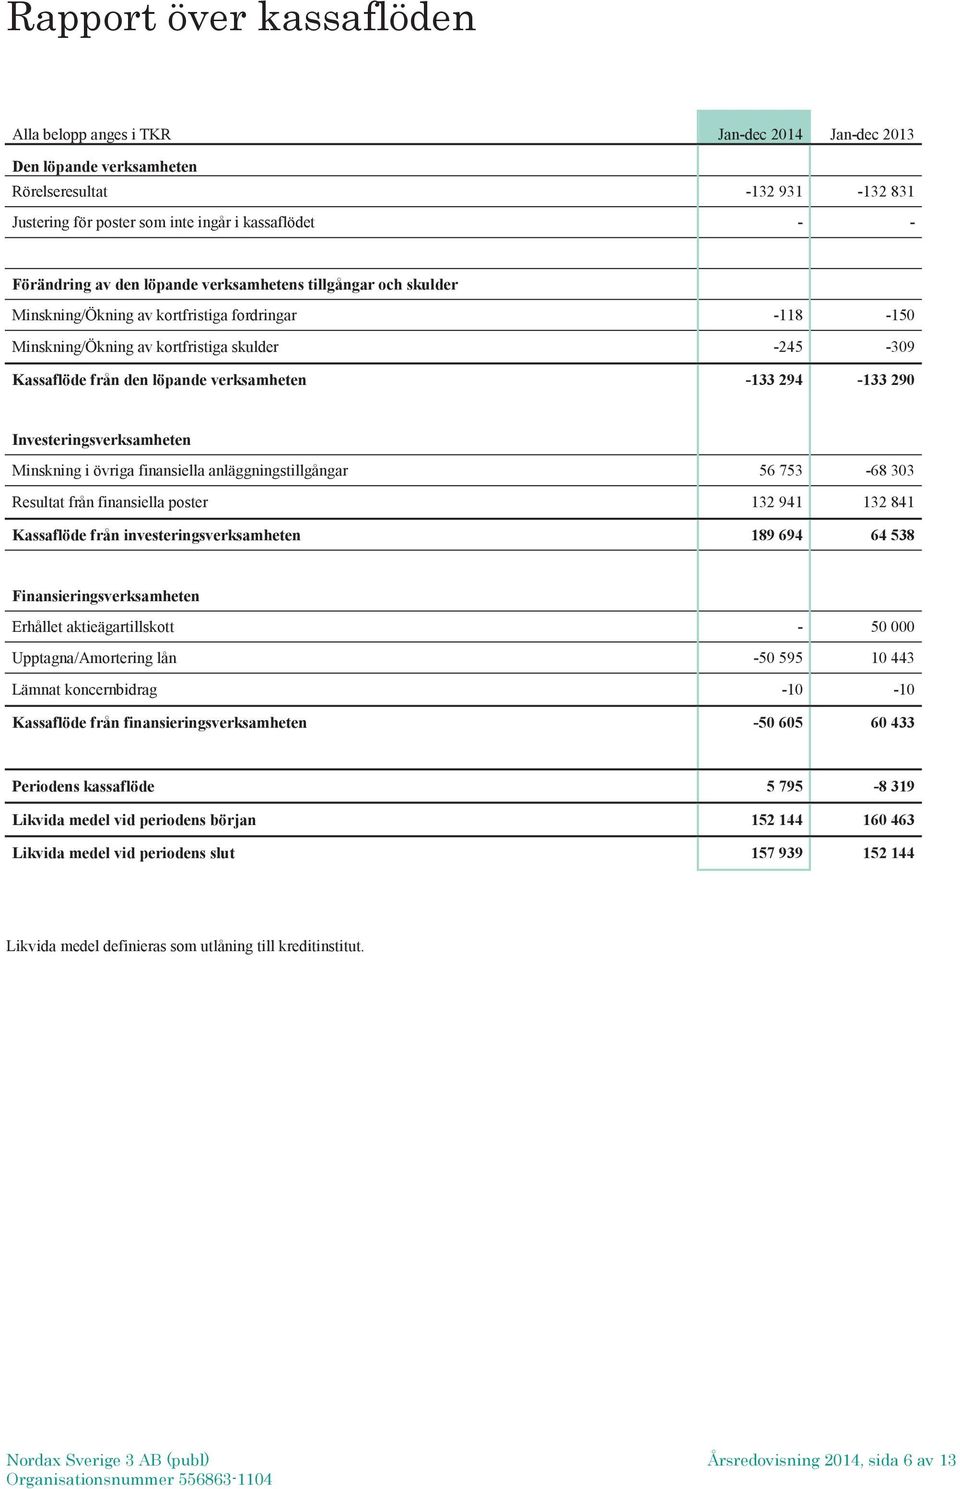 Investeringsverksamheten Minskning i övriga finansiella anläggningstillgångar 56 753-68 303 Resultat från finansiella poster 132 941 132 841 Kassaflöde från investeringsverksamheten 189 694 64 538